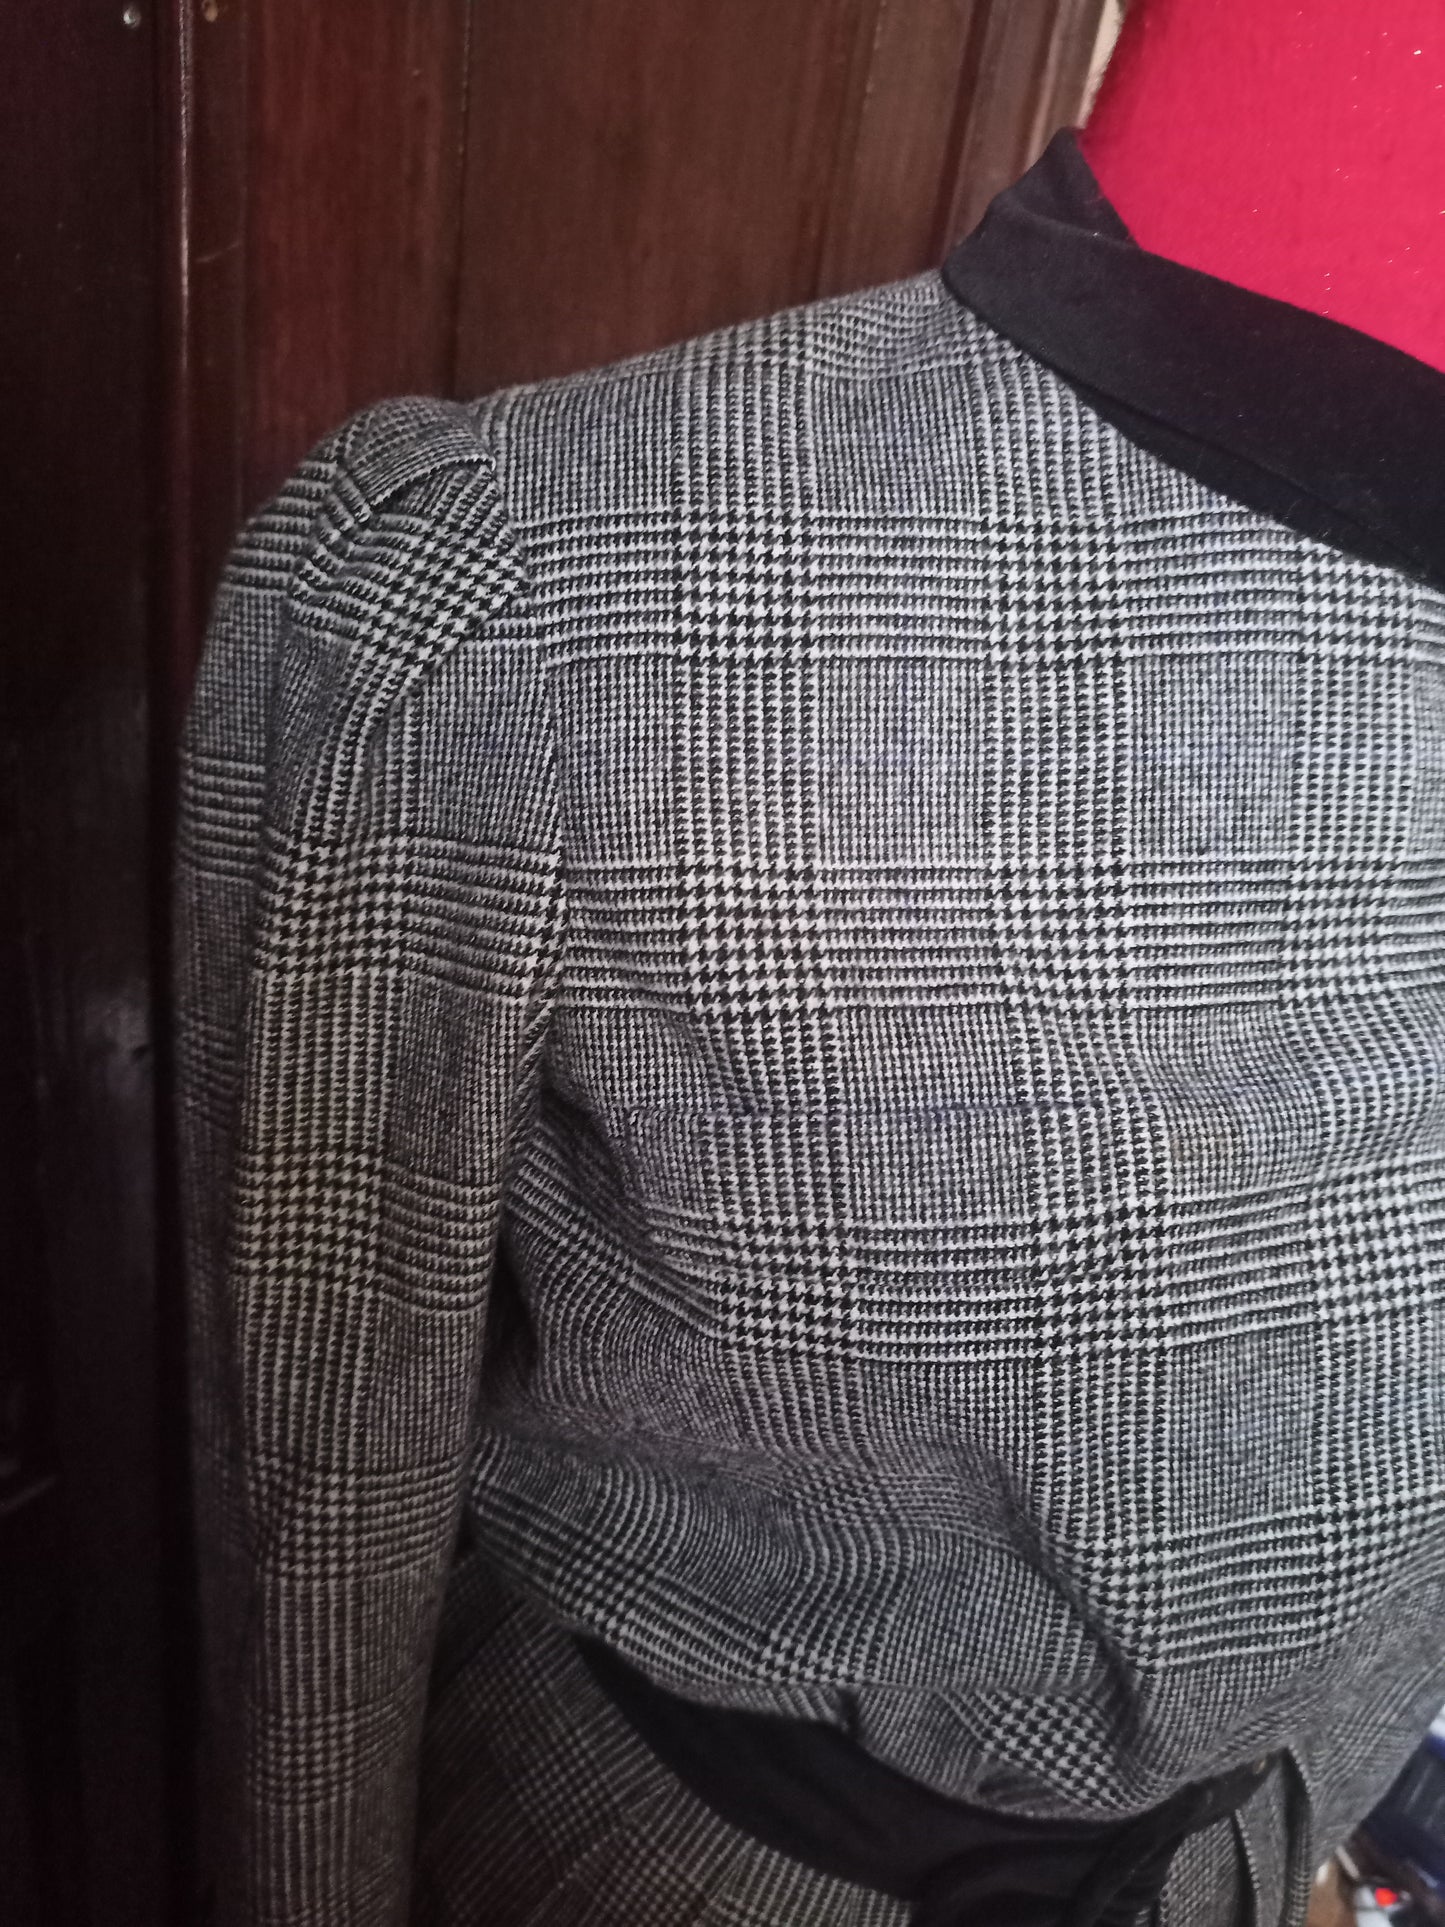 Completo tailleur giacca e gonna vintage anni 80 (vedi misure)